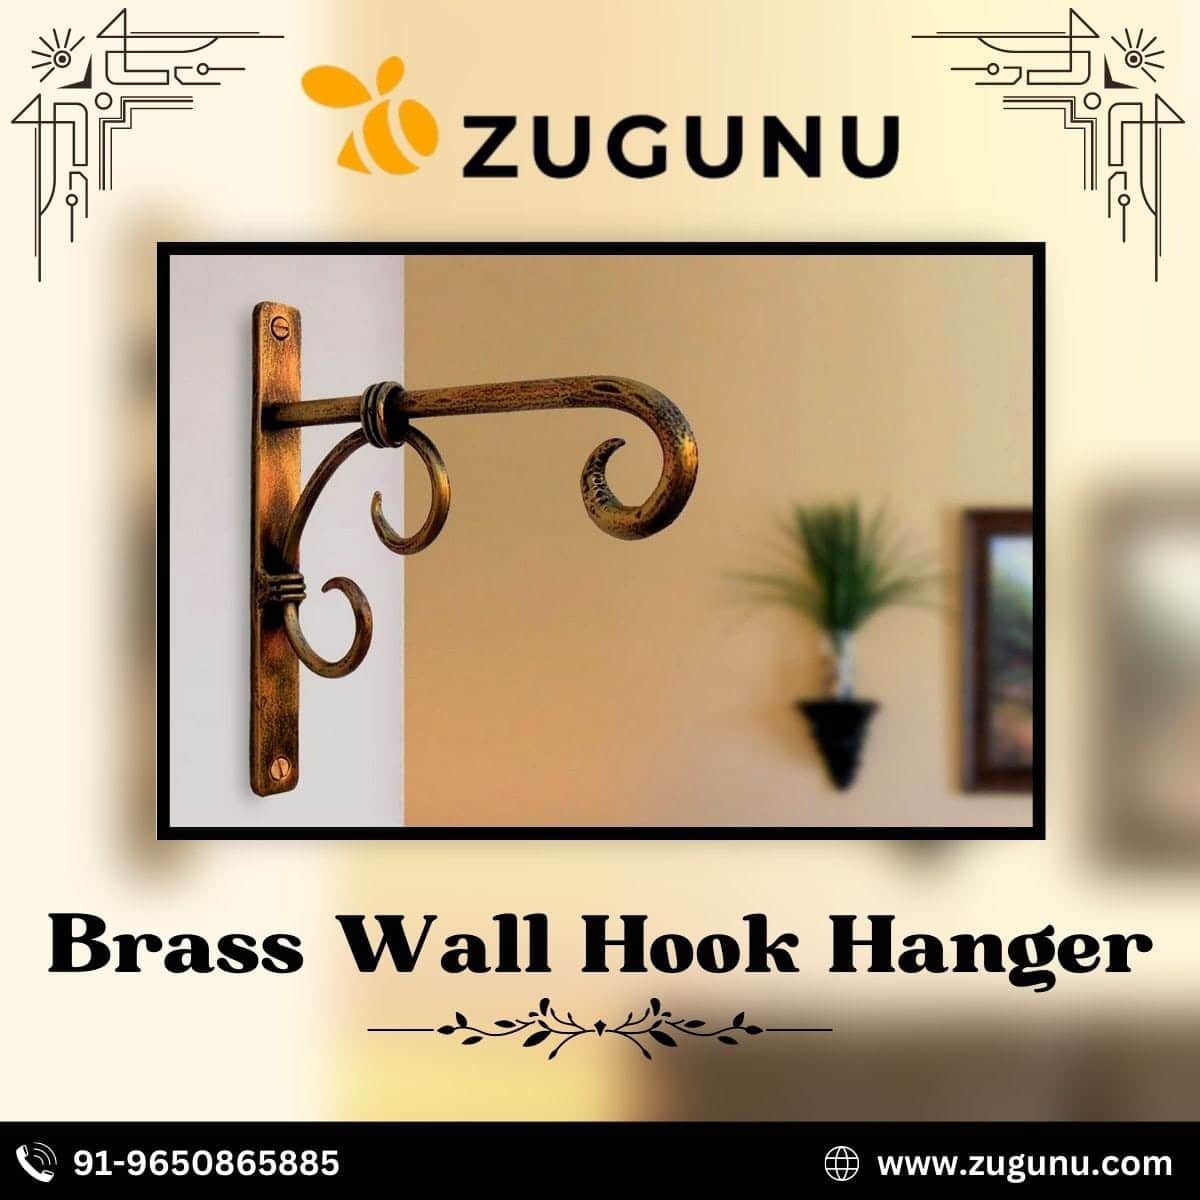 Brass Wall Hook Hanger From Zugunu